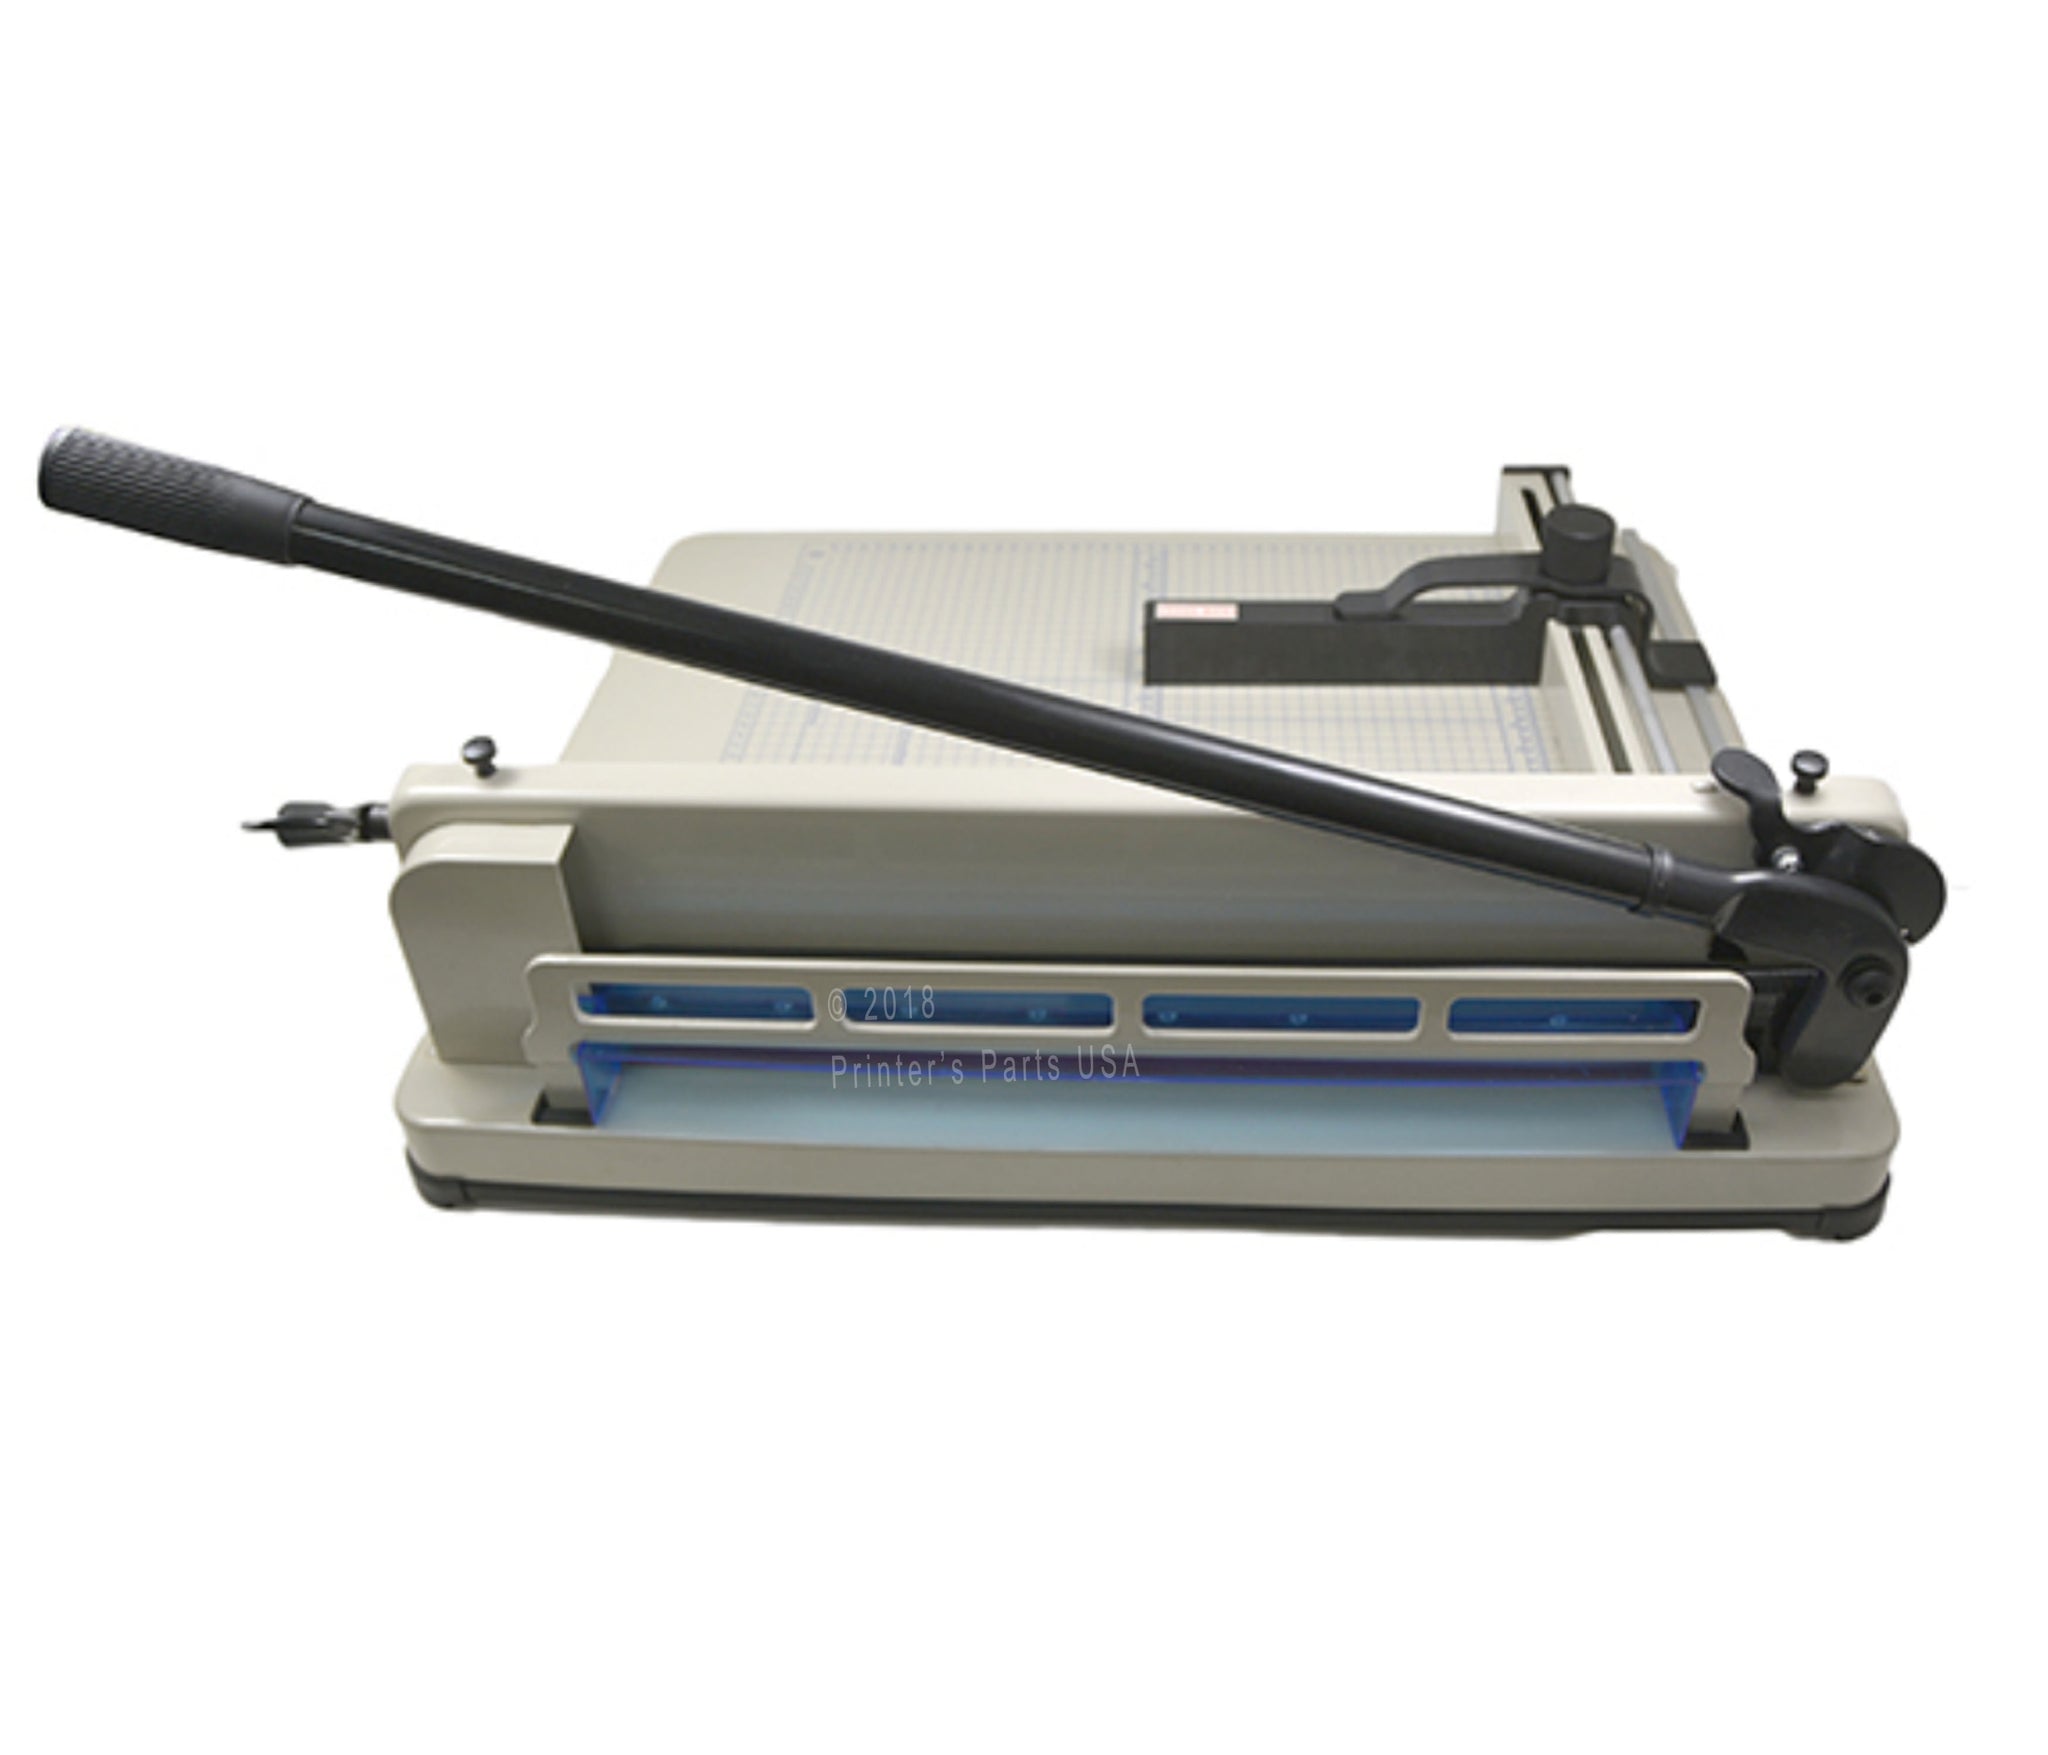 Manual Paper Trimmer Model 852 (A4) (12.6″ x 9.8″) Guillotine Cutter